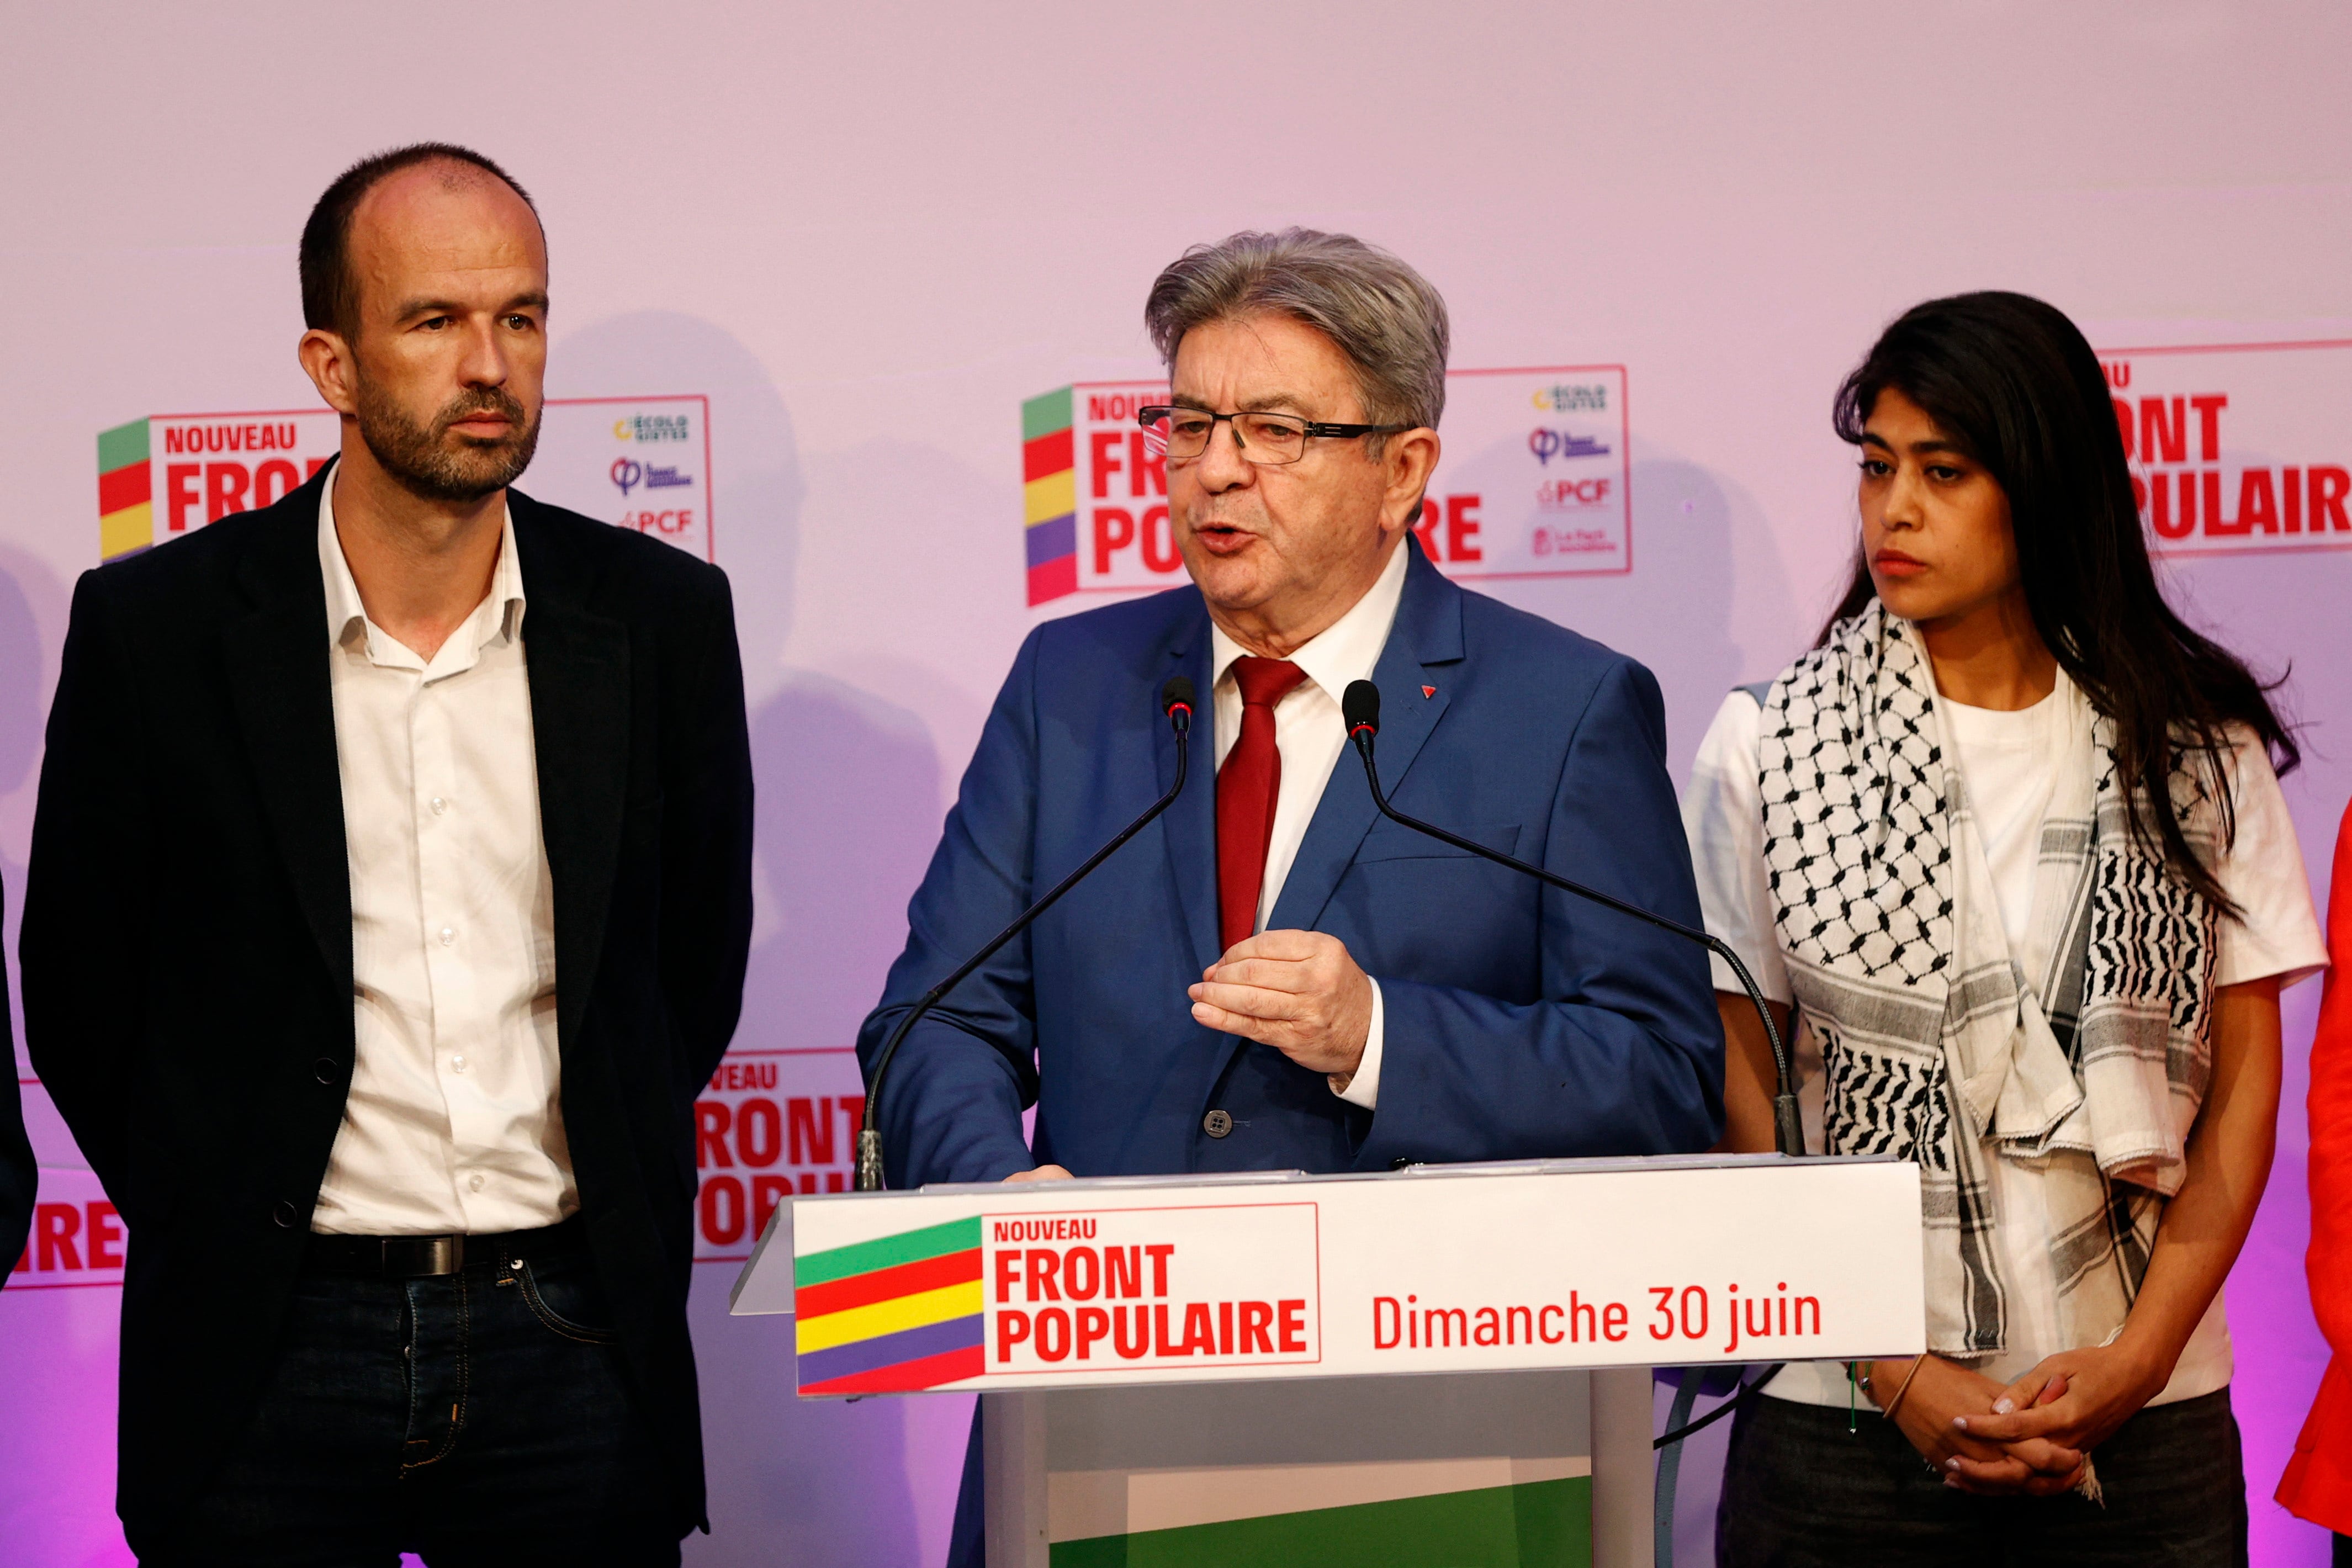 Jean-Luc Melenchon, líder del partido La Francia Insumisa, en una compaecencia tras el cierre de los colegios en Francia (REUTERS/Abdul Saboor)